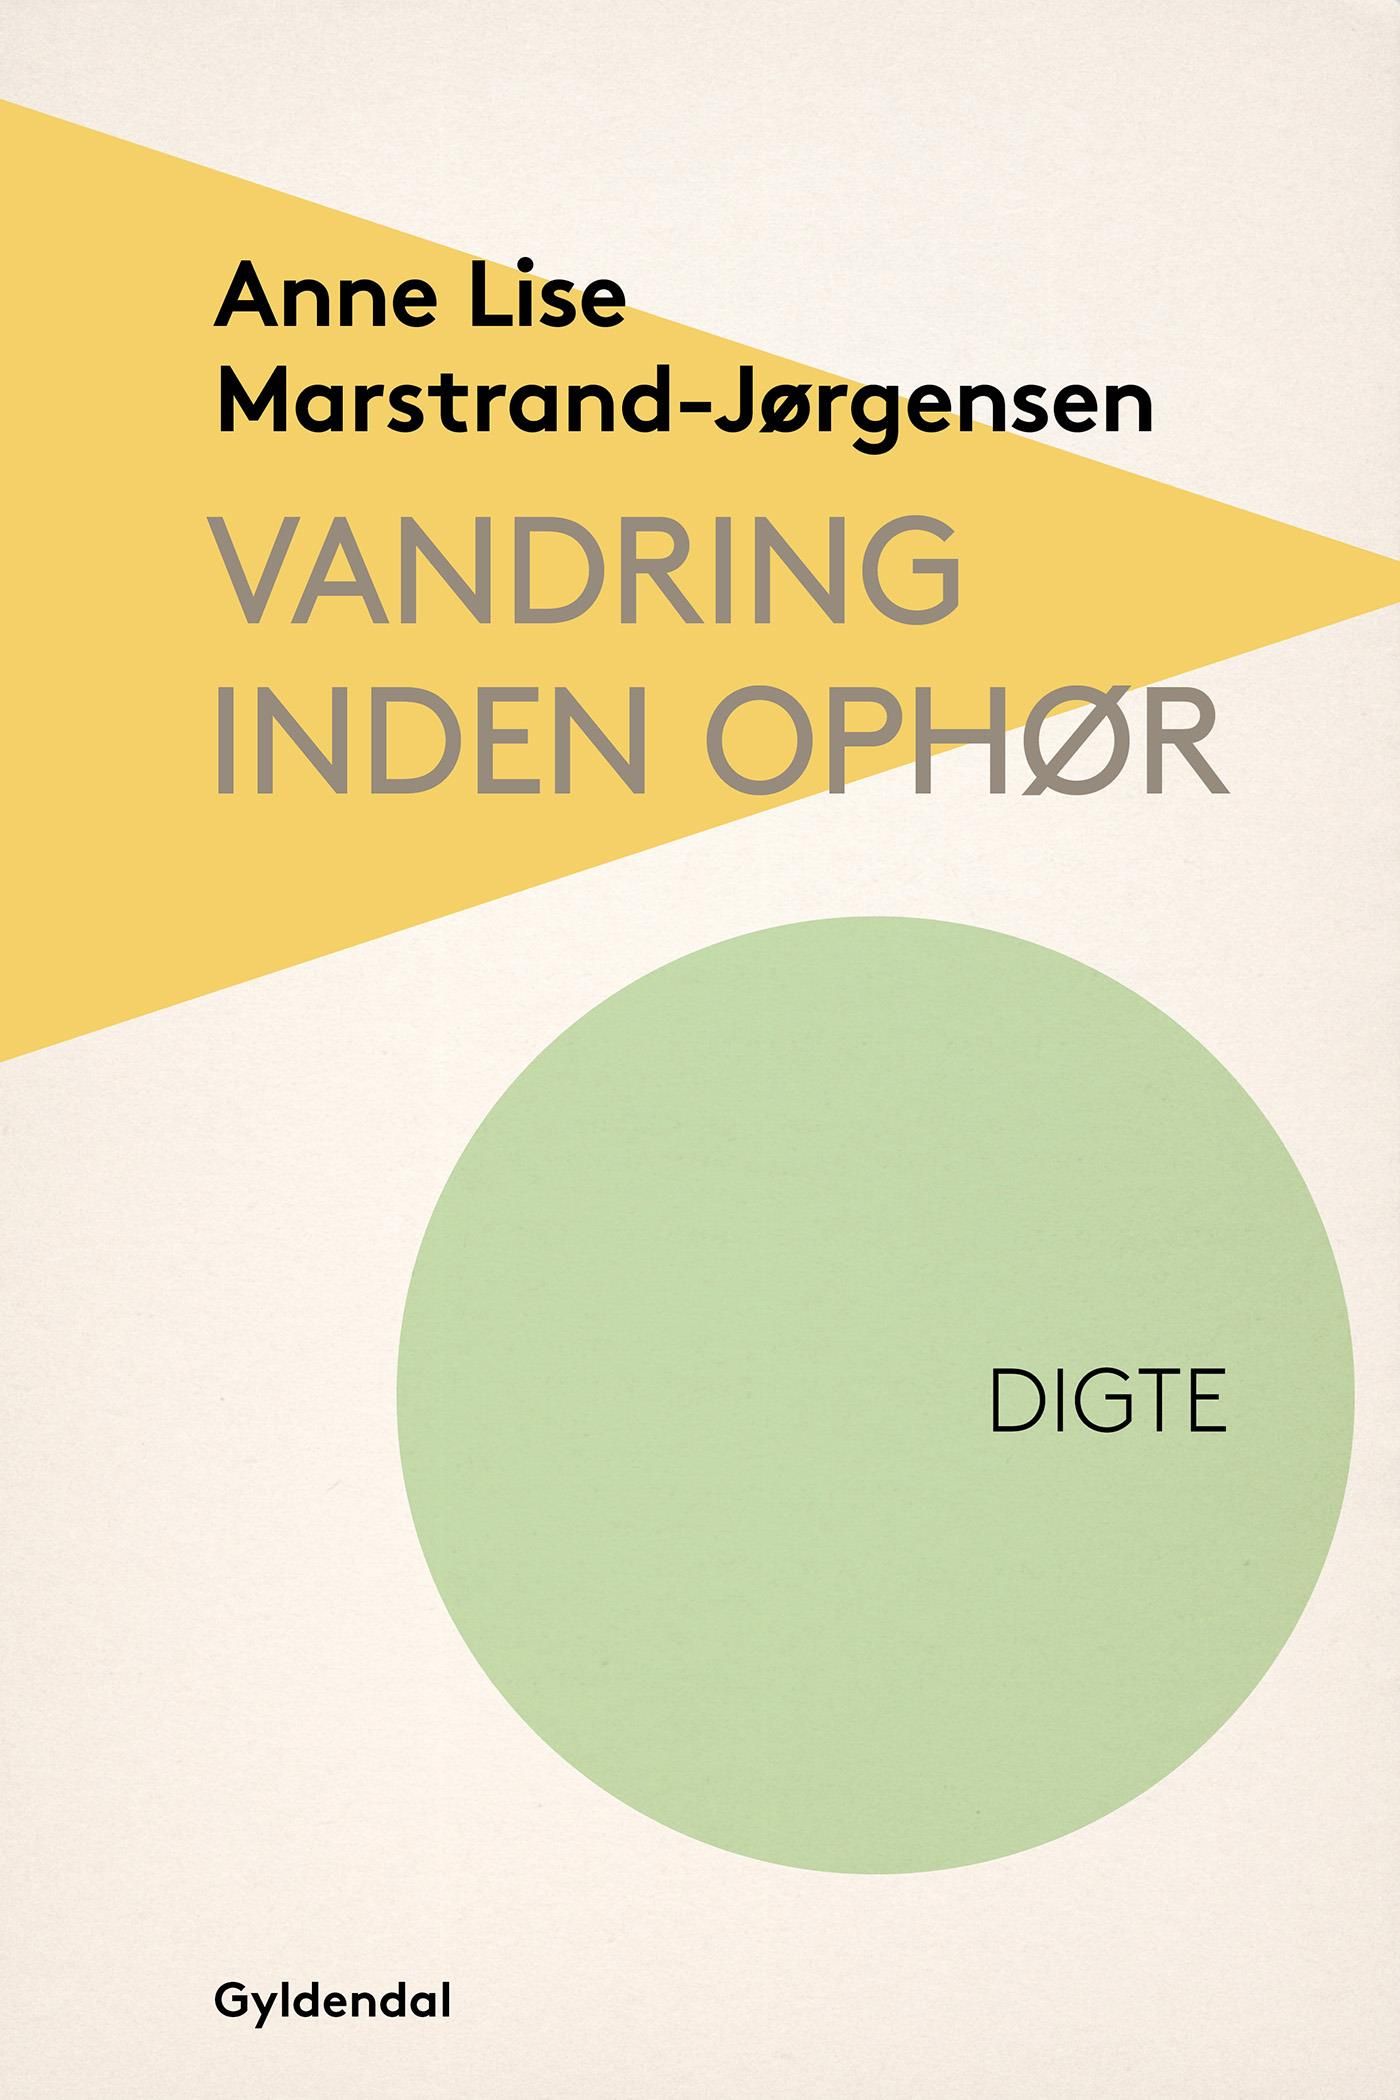 Vandring inden ophør, eBook by Anne Lise Marstrand-Jørgensen